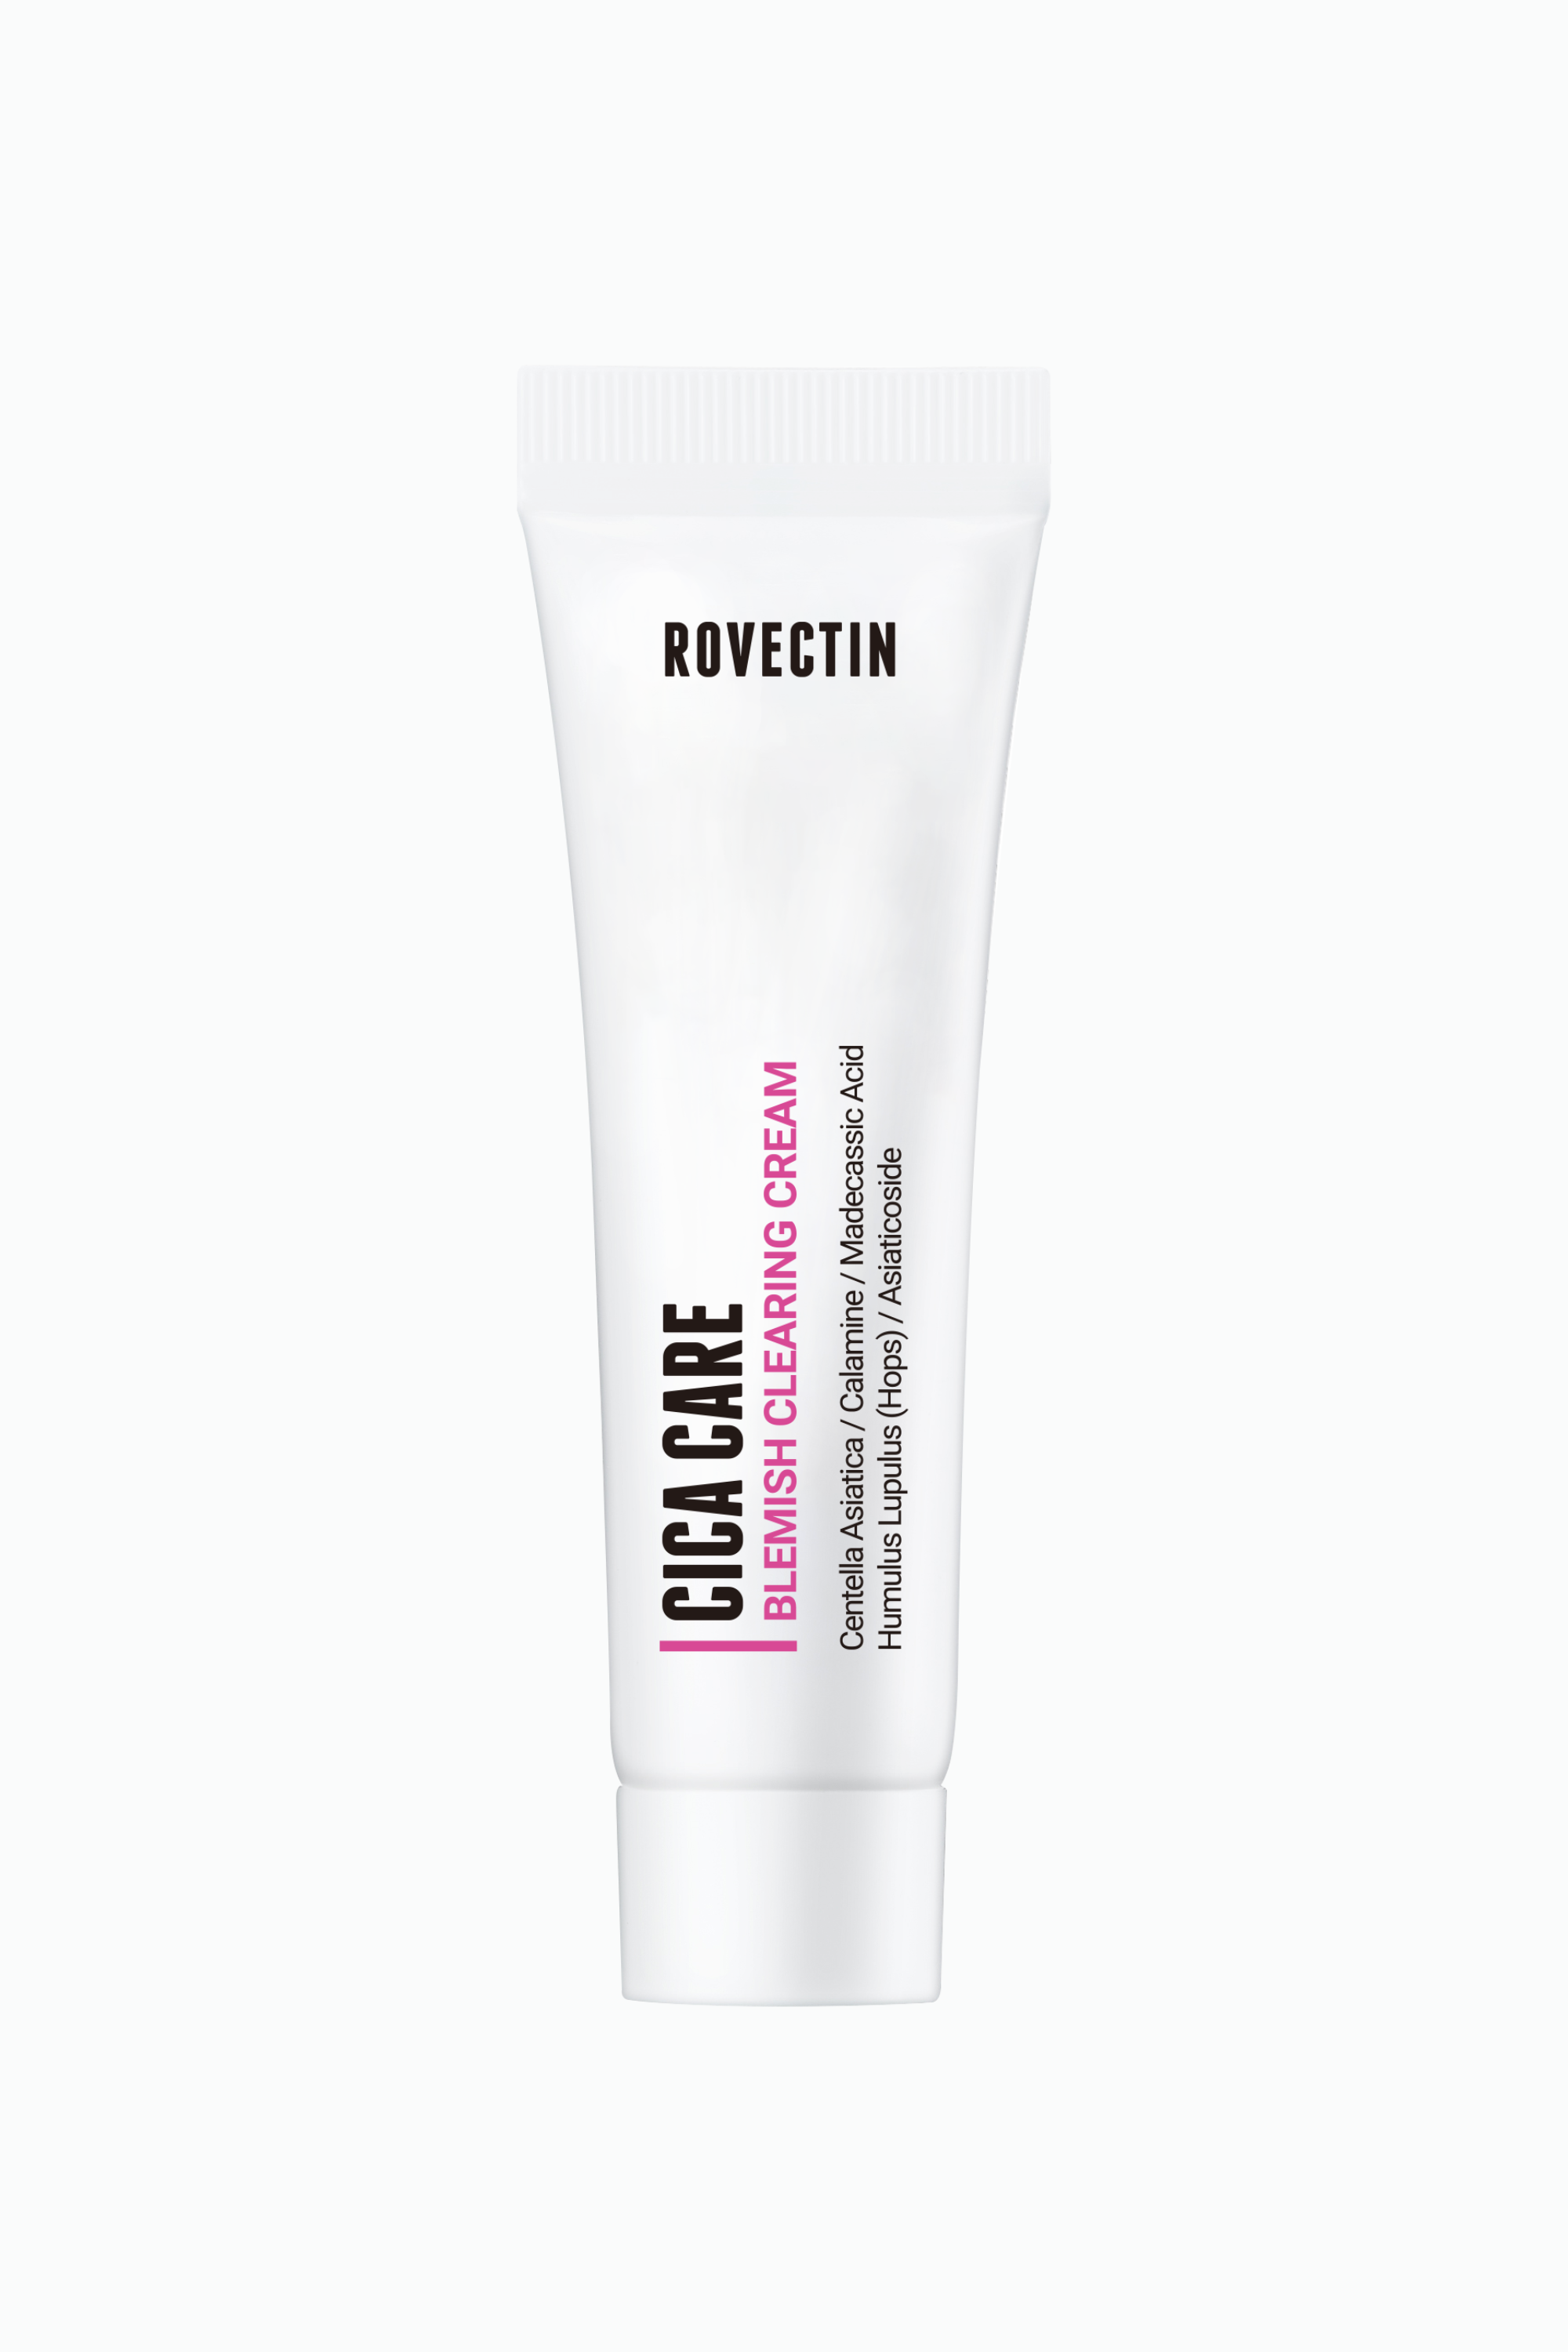 Cica Care Blemish Cream 10ml - Rovectin Skin Essentials